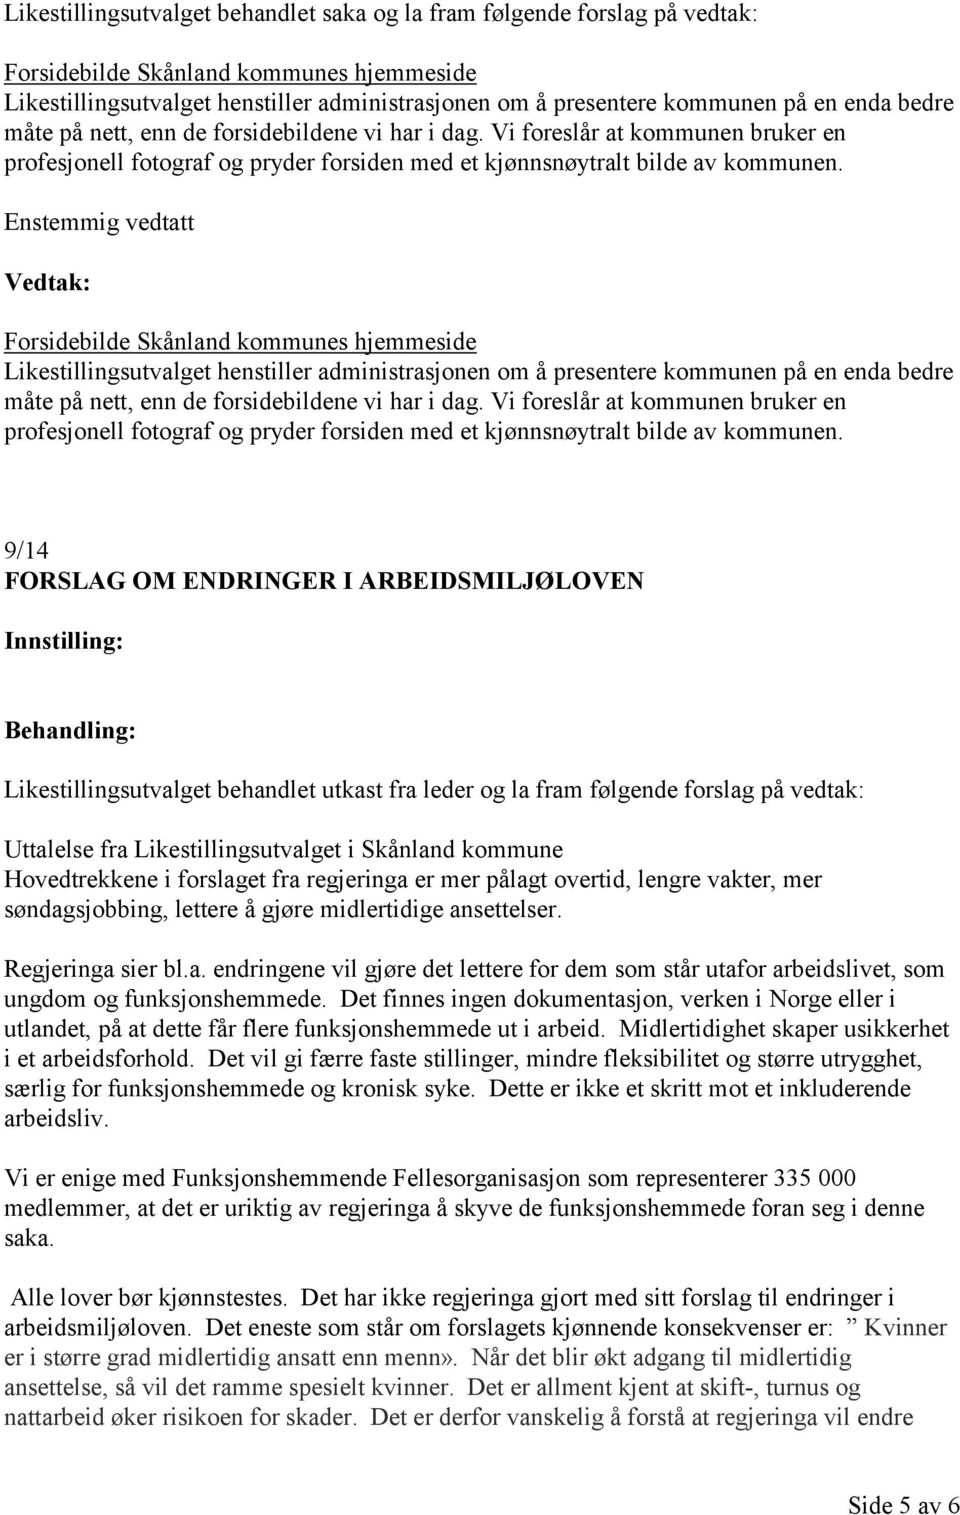 Forsidebilde Skånland kommunes hjemmeside Likestillingsutvalget henstiller administrasjonen om å presentere kommunen på en  9/14 FORSLAG OM ENDRINGER I ARBEIDSMILJØLOVEN Likestillingsutvalget